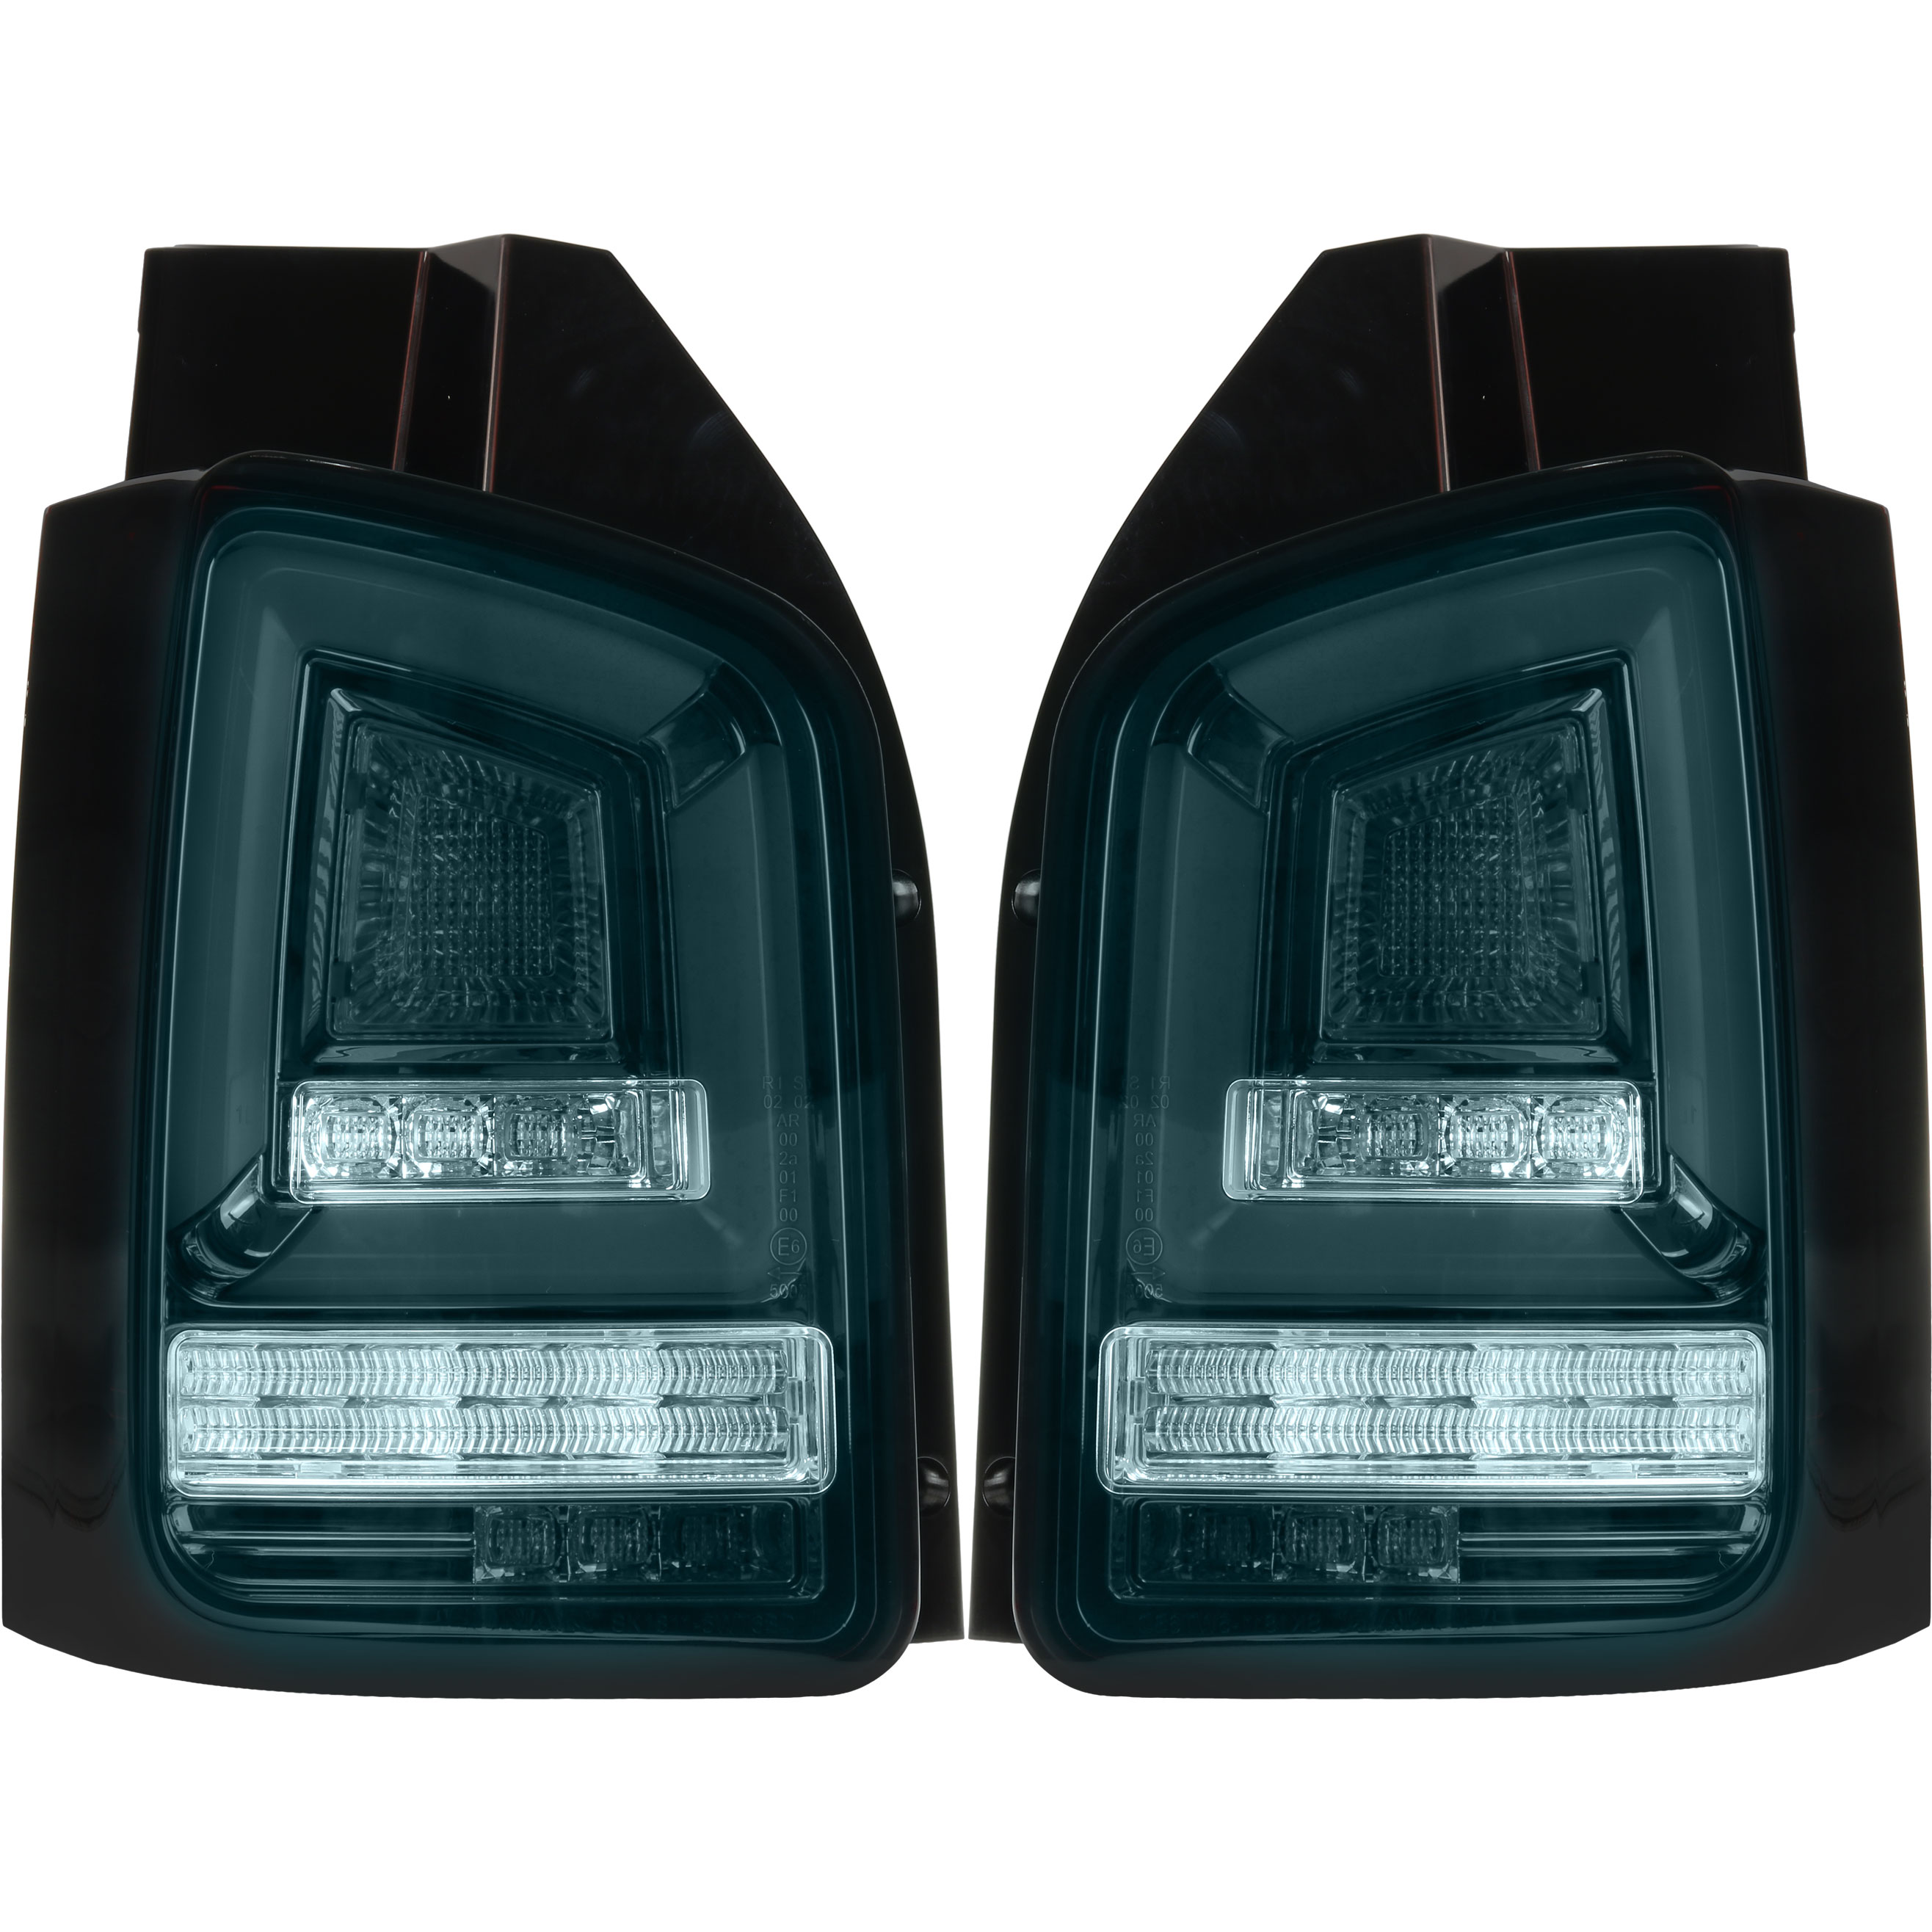 Rückleuchten Set Voll LED Lightbar für VW T5 Bj. 09-15 schwarz für Heckklappe